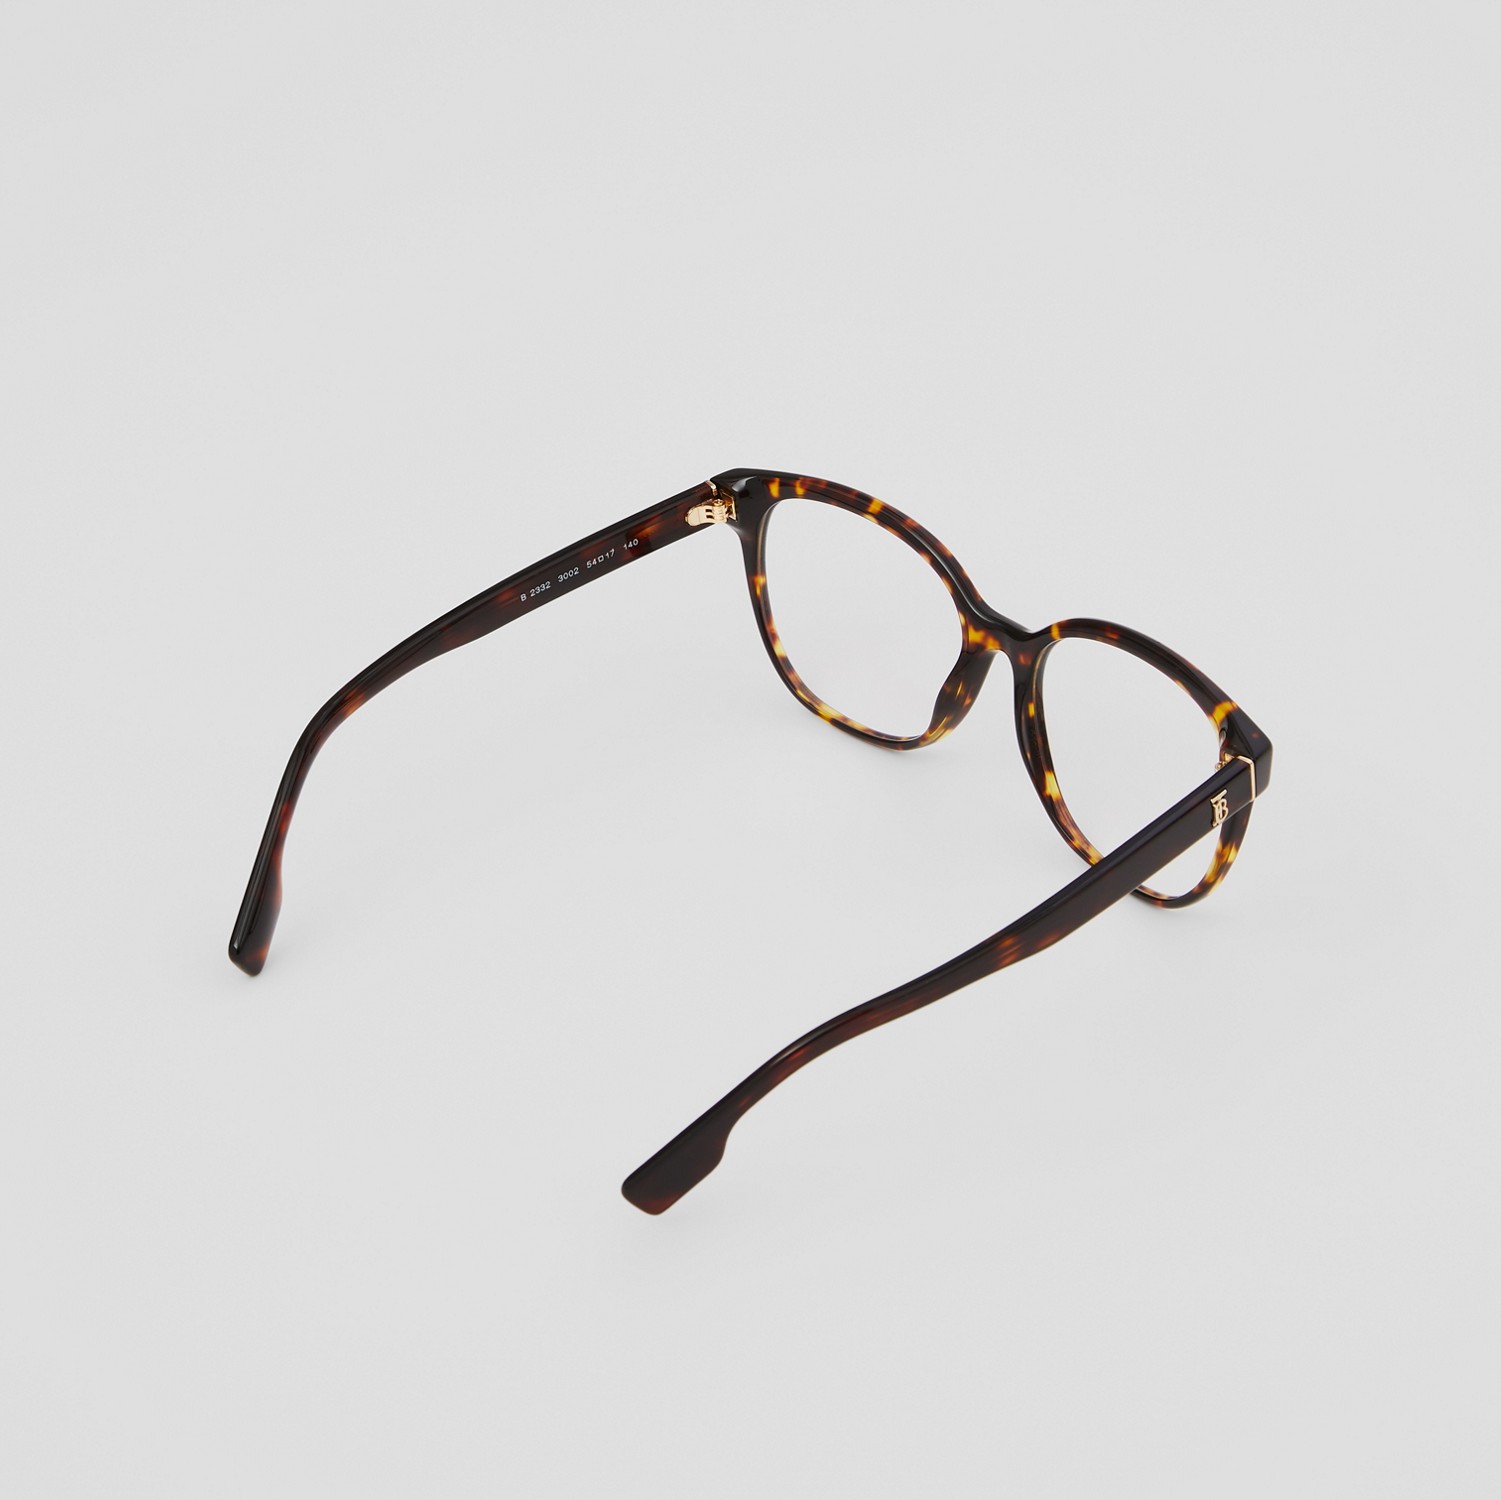 Monture ronde Monogram pour lunettes de vue